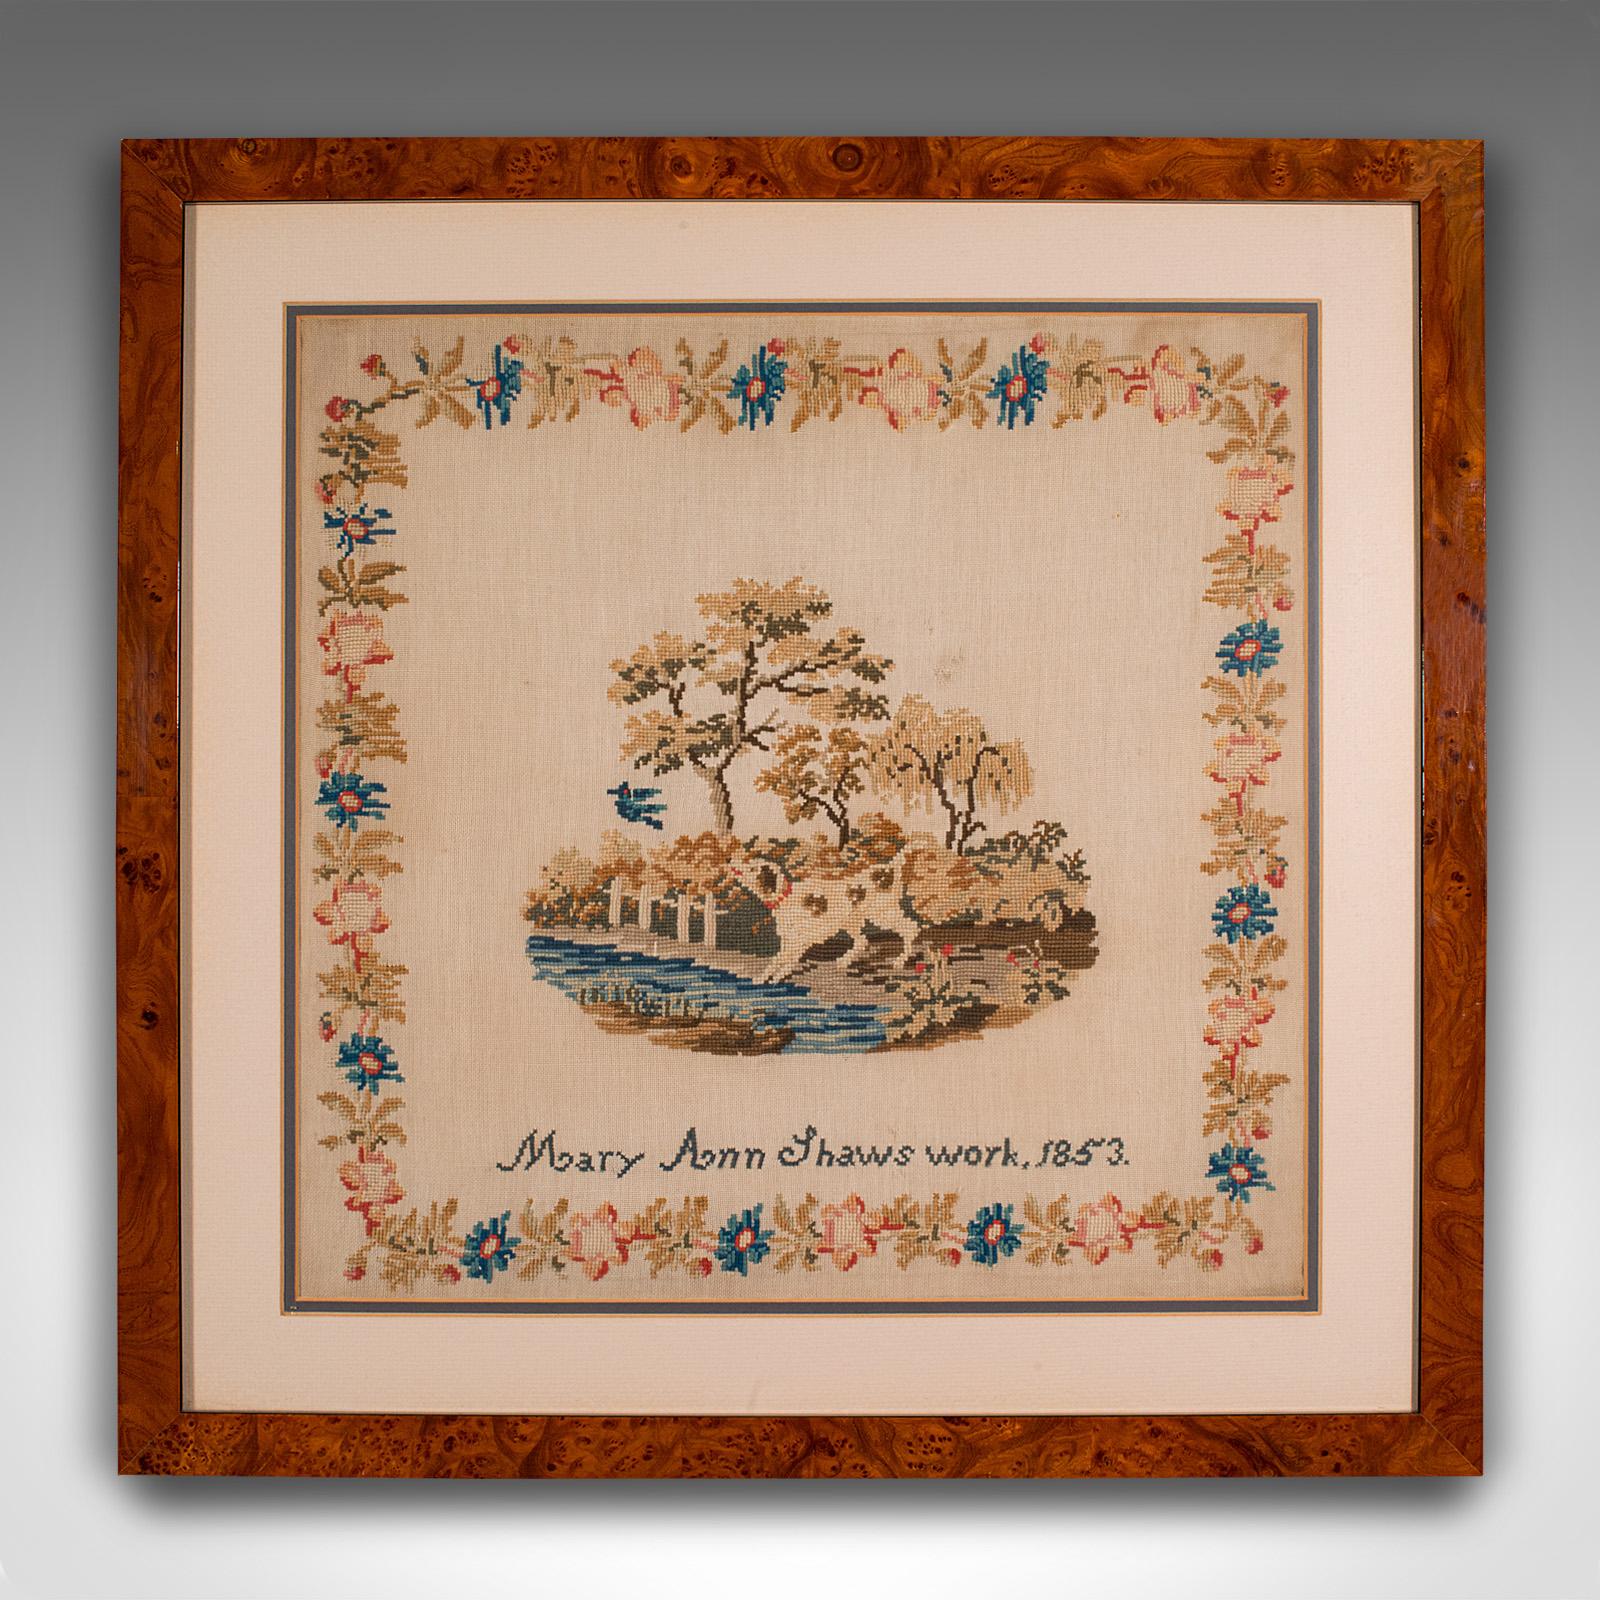 Il s'agit d'un sampler ancien encadré. Panneau de tapisserie à l'aiguille anglais, datant de la période victorienne et plus tard, vers 1850.

Charmant échantillon du début de la période victorienne
Présentant une patine d'ancienneté souhaitable et